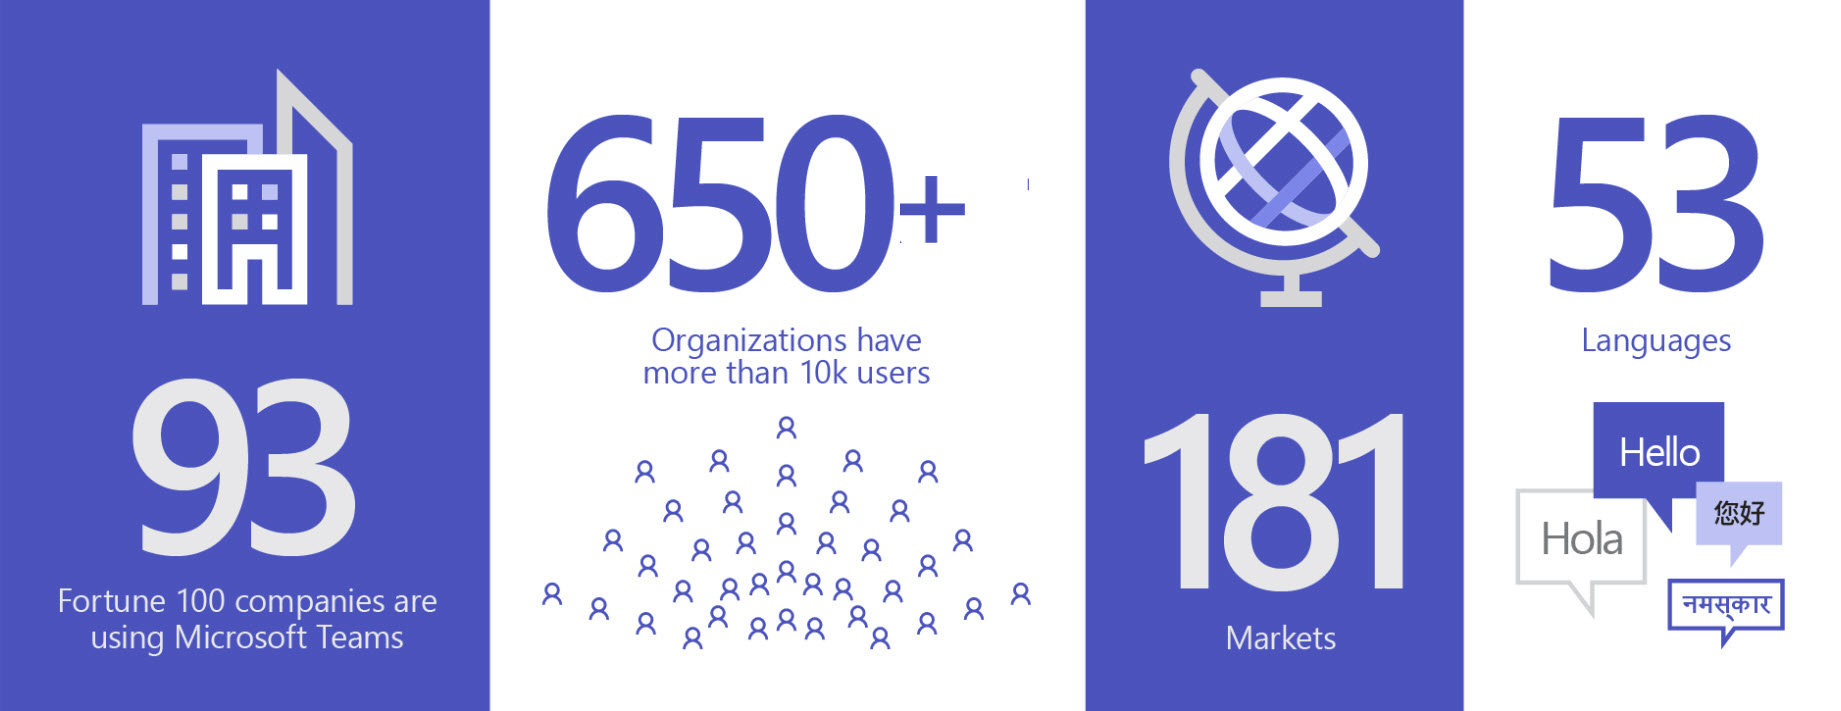 Kép 93 szervezetről, amely a Teamst használja: több mint 650 szervezet rendelkezik 10 ezernél több felhasználóval, 181 piacon és 53 nyelven